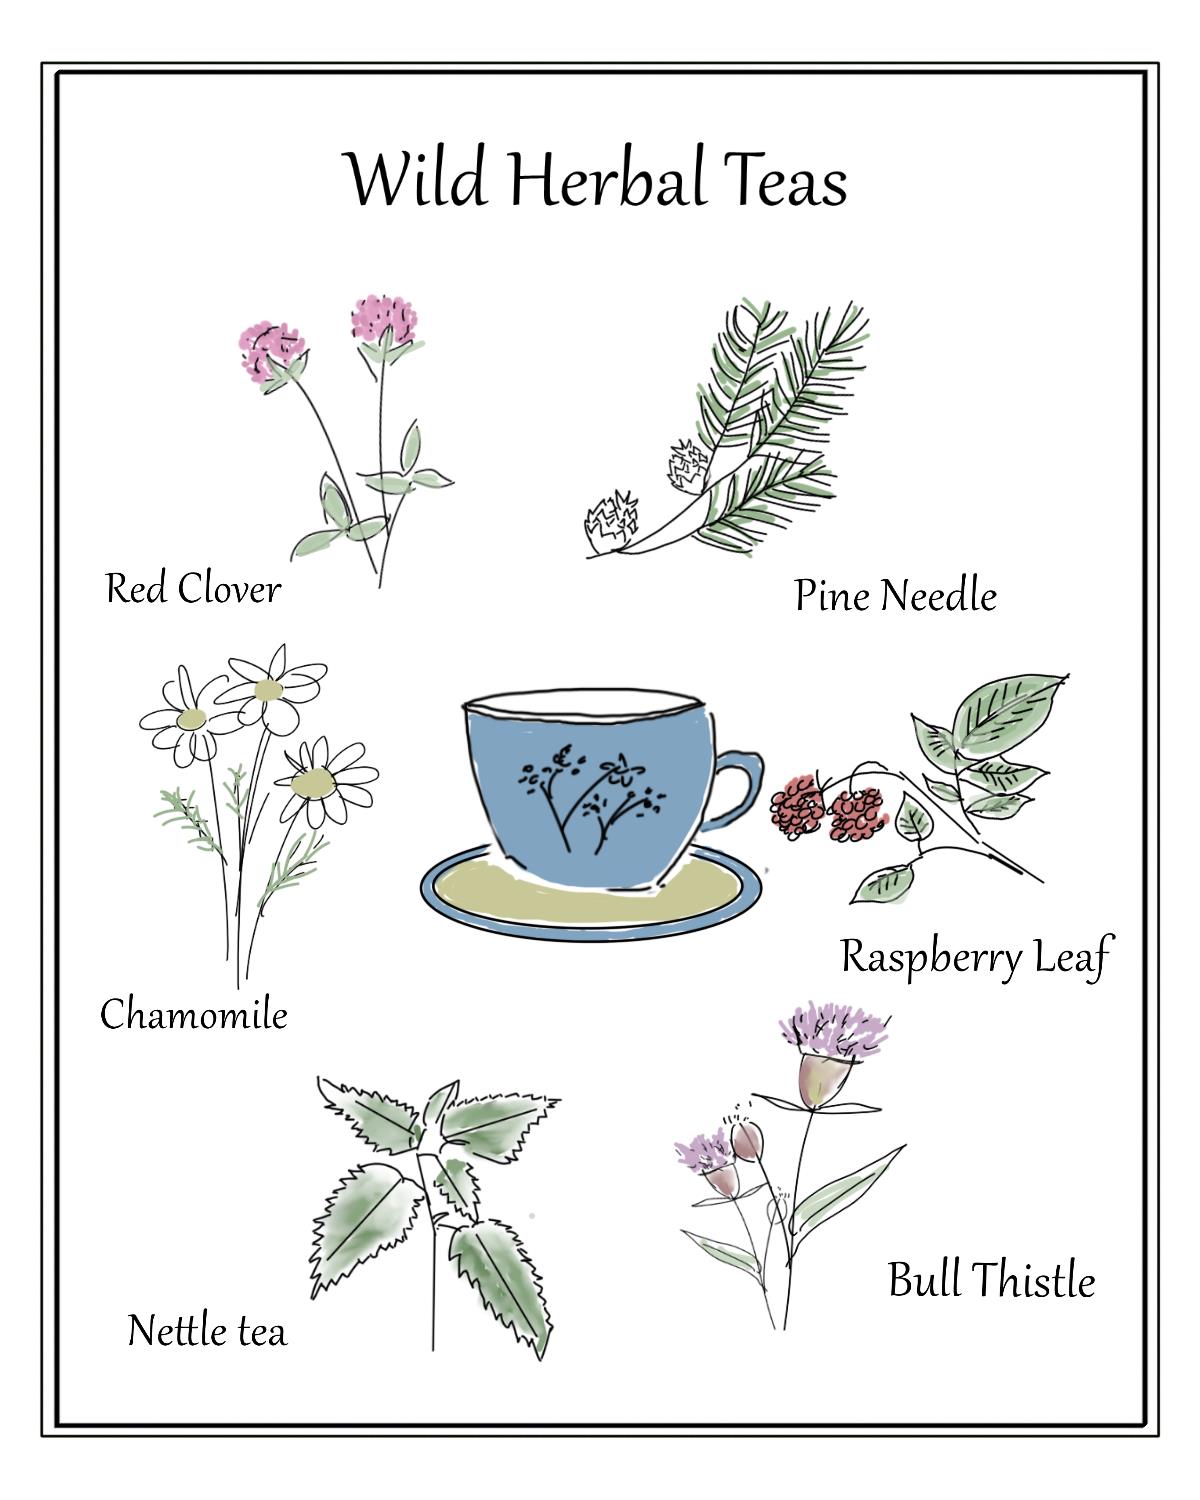 Wild-herbal-teas-poster